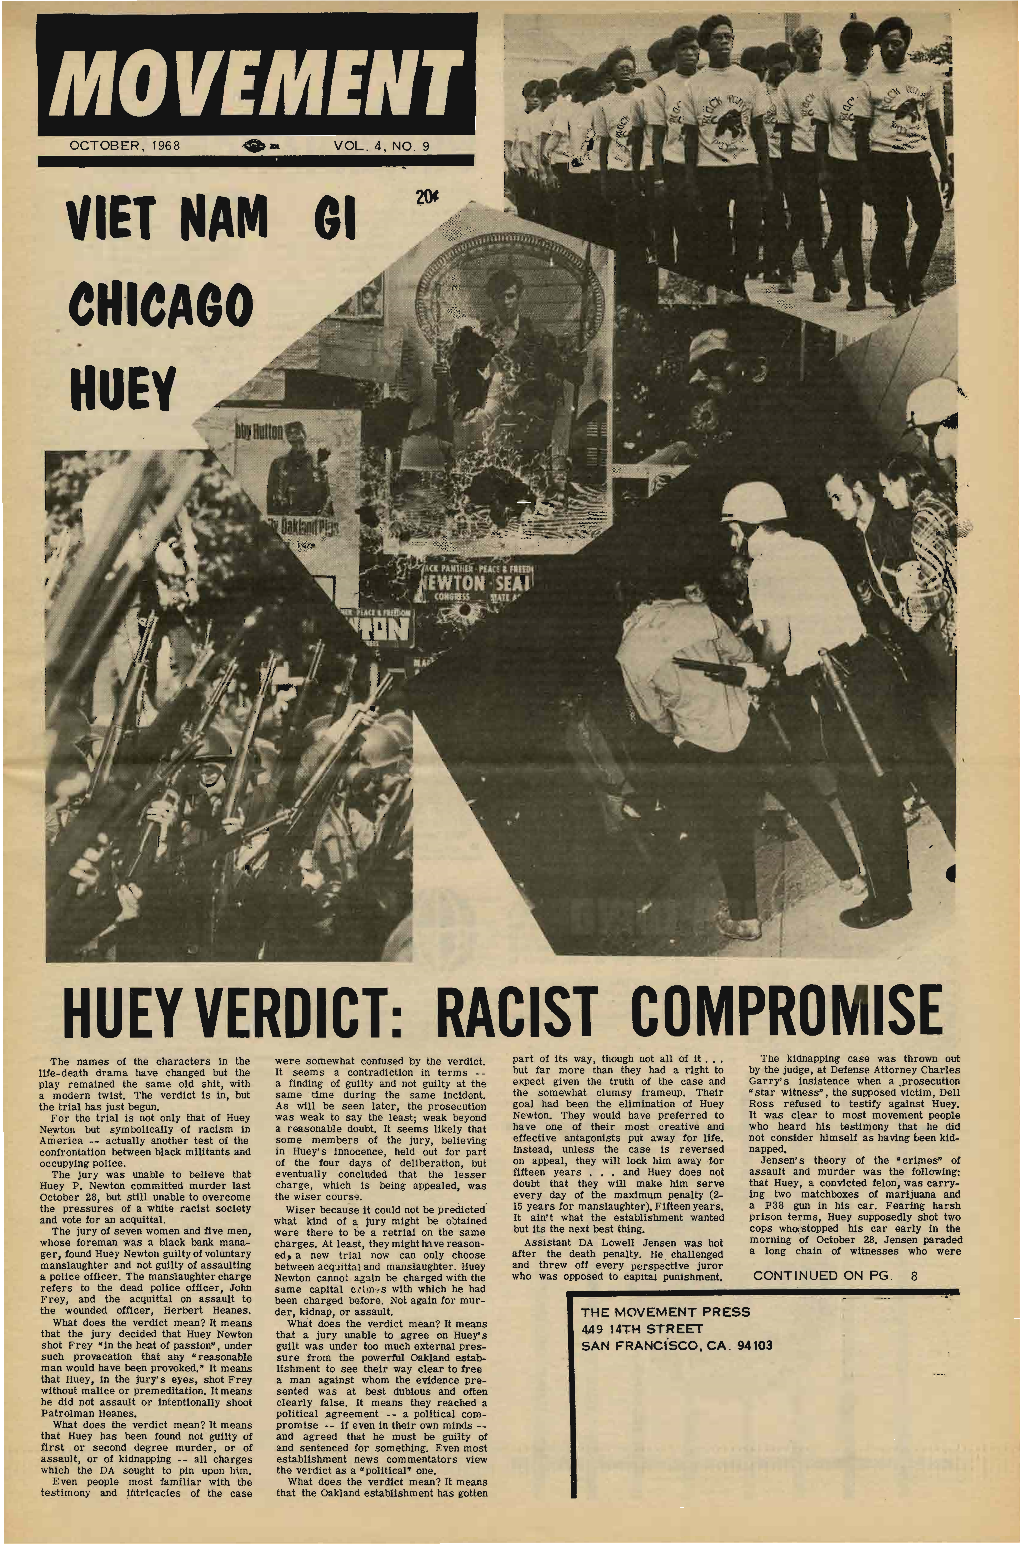 The Movement, October 1968. Vol. 4 No. 10